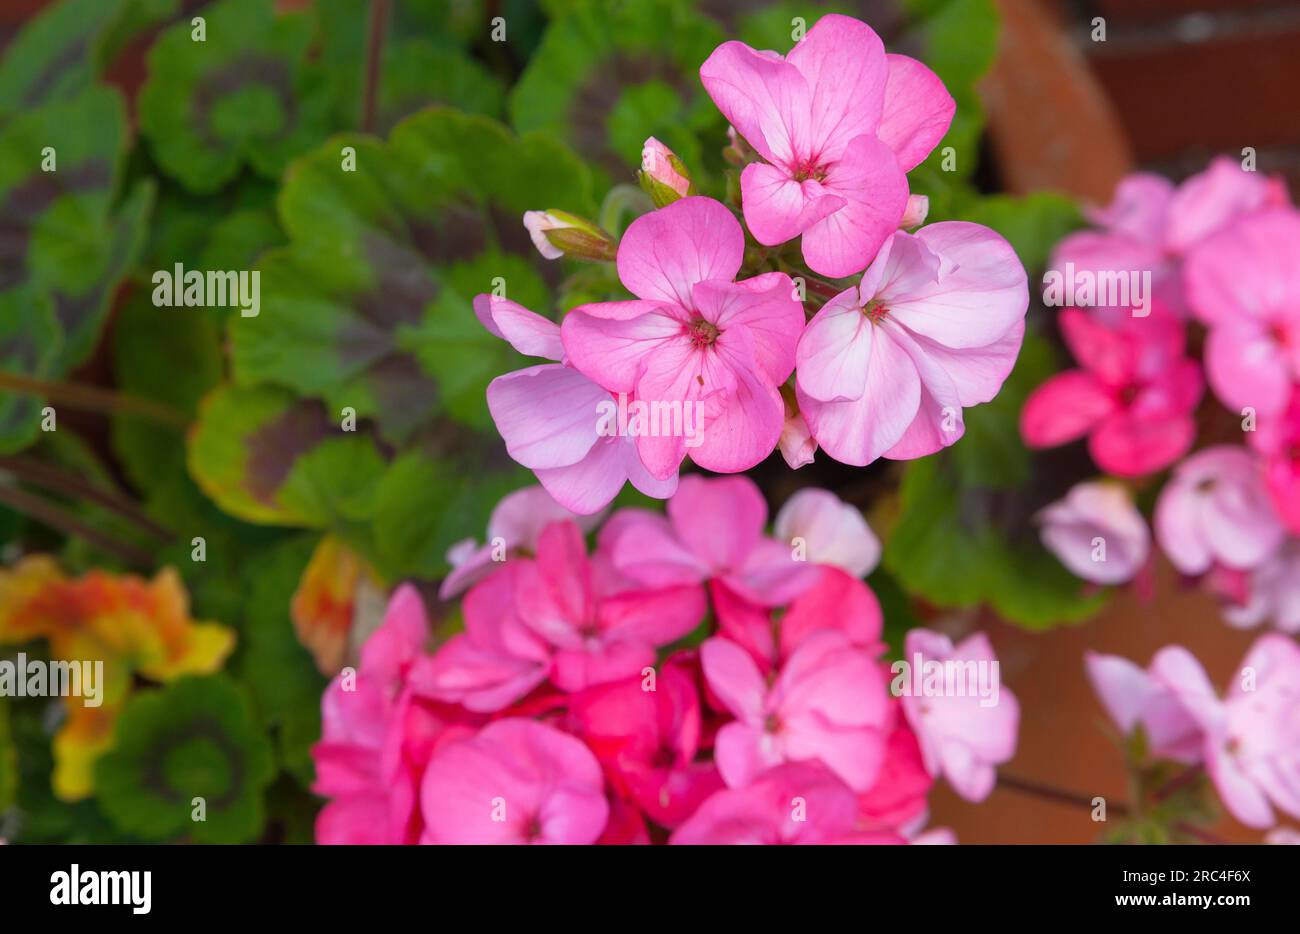 Flora, Flowers, Pink coloured Geranium growing outdoor in garden. Stock Photo